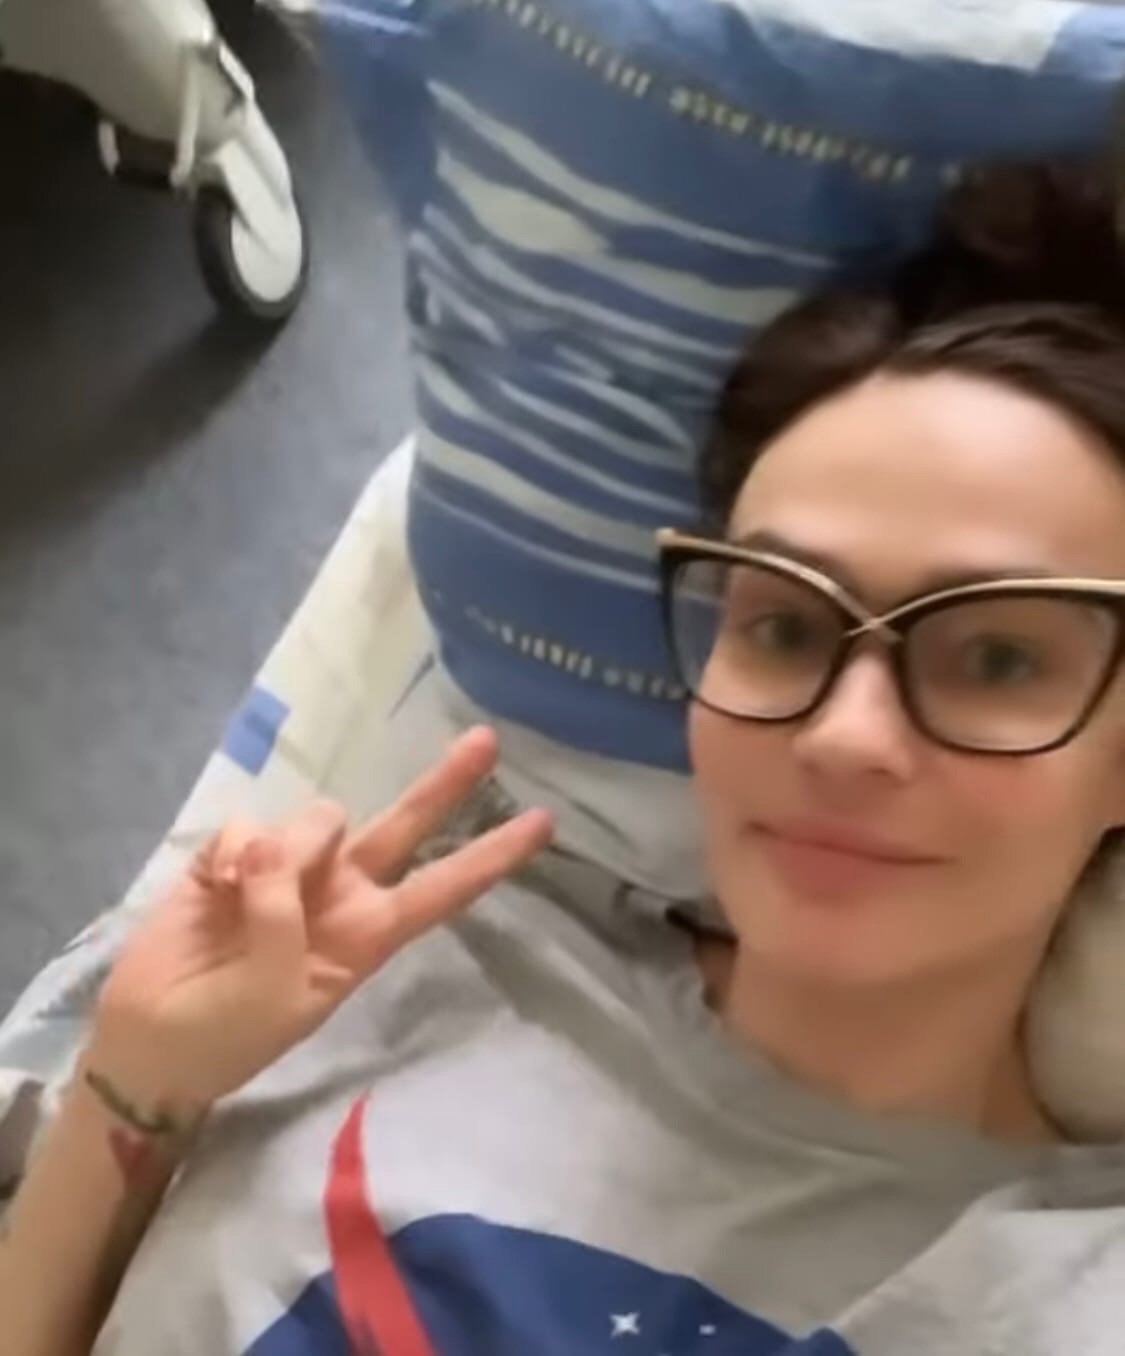 "Ушла в тапочках": почему Алёна Водонаева недовольна своим пребыванием в больнице